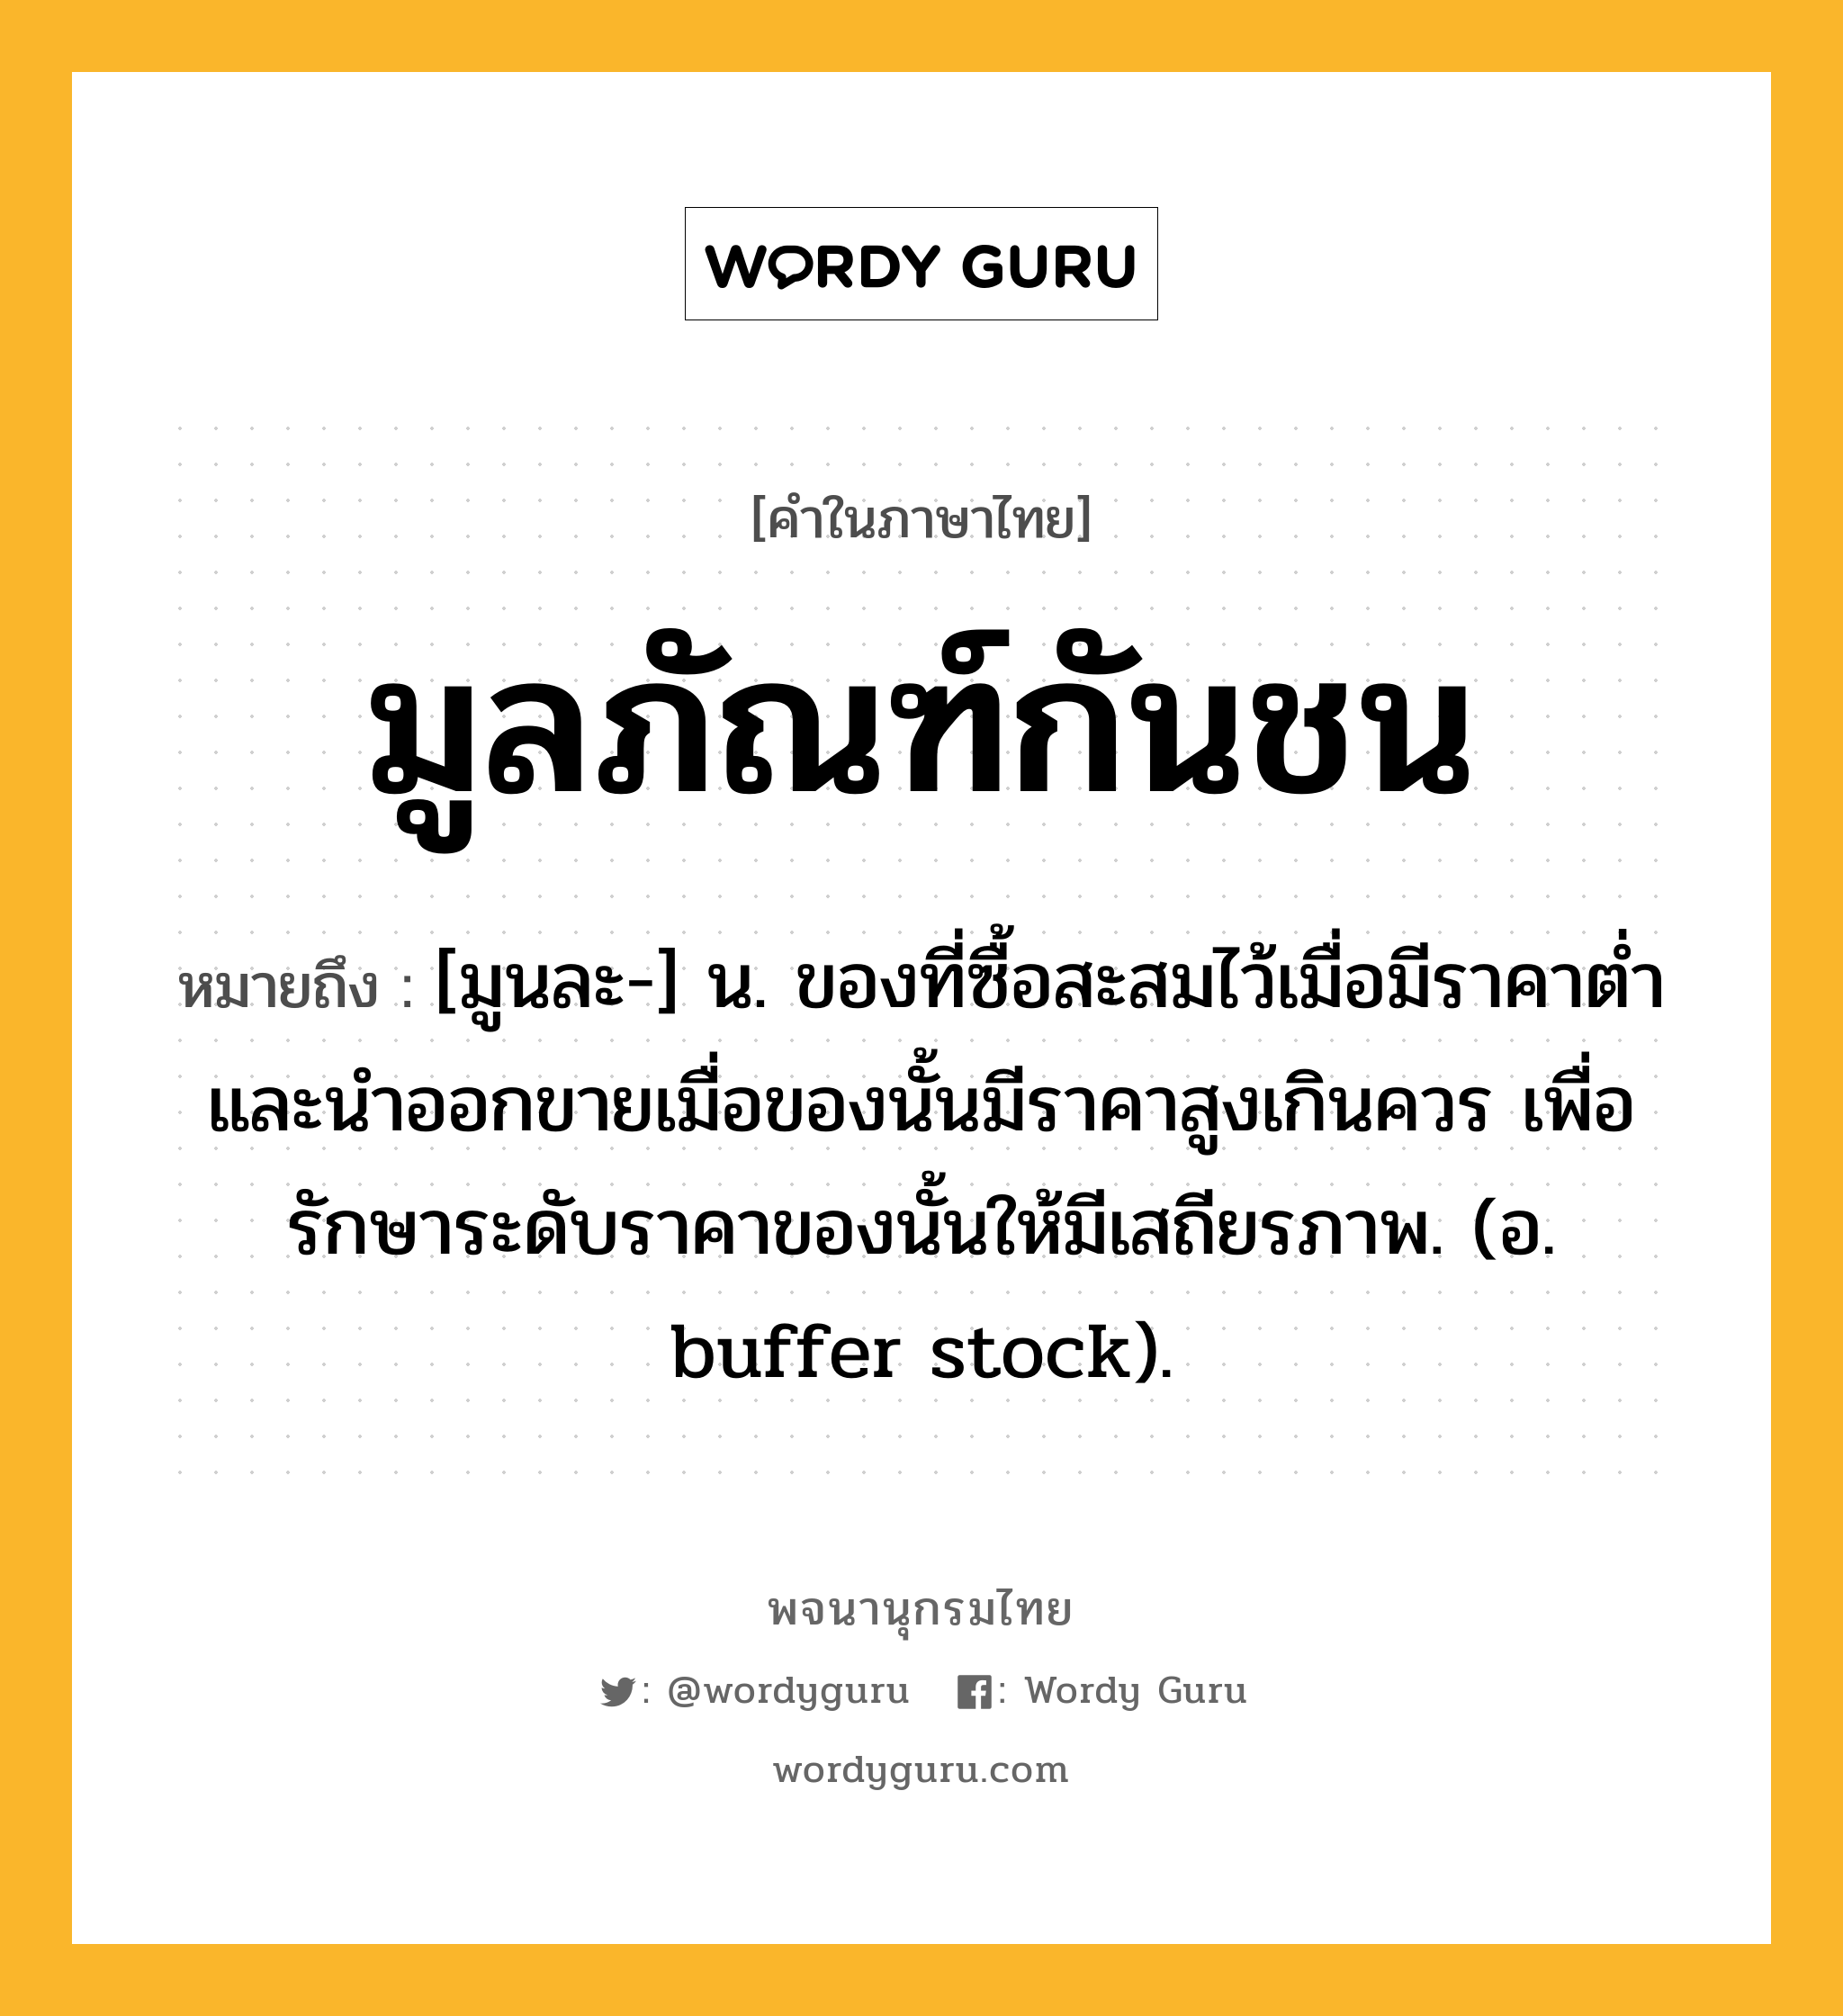 มูลภัณฑ์กันชน หมายถึงอะไร?, คำในภาษาไทย มูลภัณฑ์กันชน หมายถึง [มูนละ-] น. ของที่ซื้อสะสมไว้เมื่อมีราคาตํ่า และนําออกขายเมื่อของนั้นมีราคาสูงเกินควร เพื่อรักษาระดับราคาของนั้นให้มีเสถียรภาพ. (อ. buffer stock).